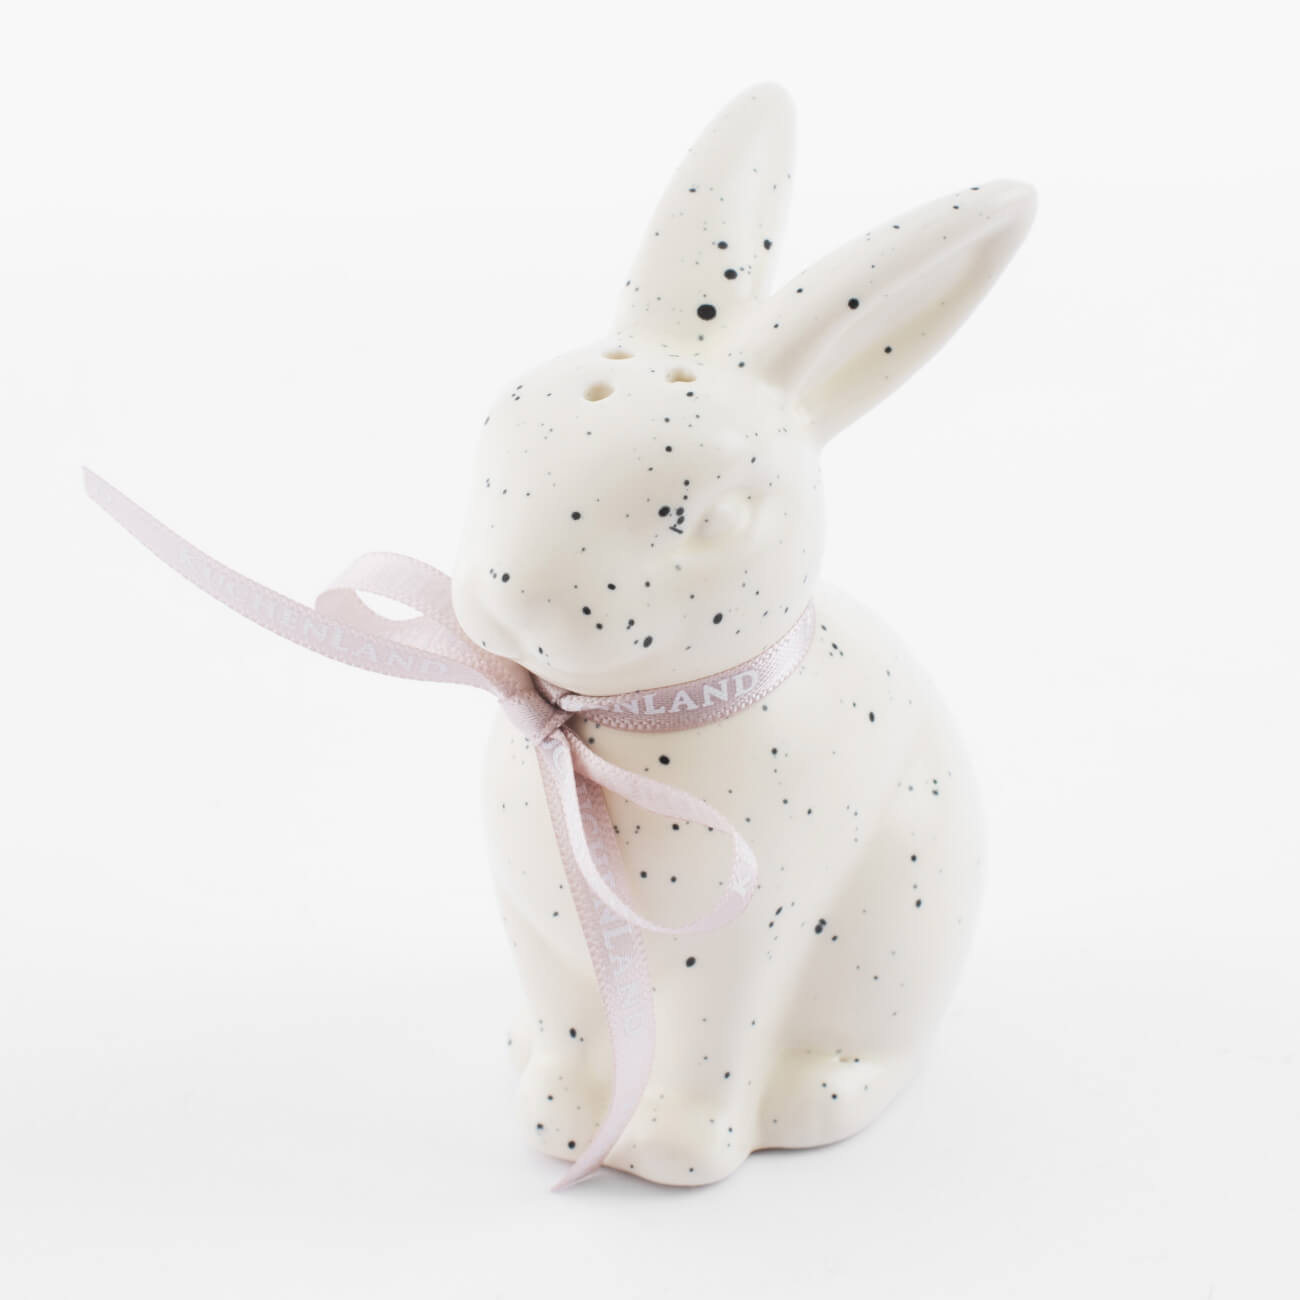 статуэтка 12 см фарфор p белая кролик в очном венке easter Емкость для соли или перца, 10 см, фарфор P, молочная, в крапинку, Кролик, Natural Easter